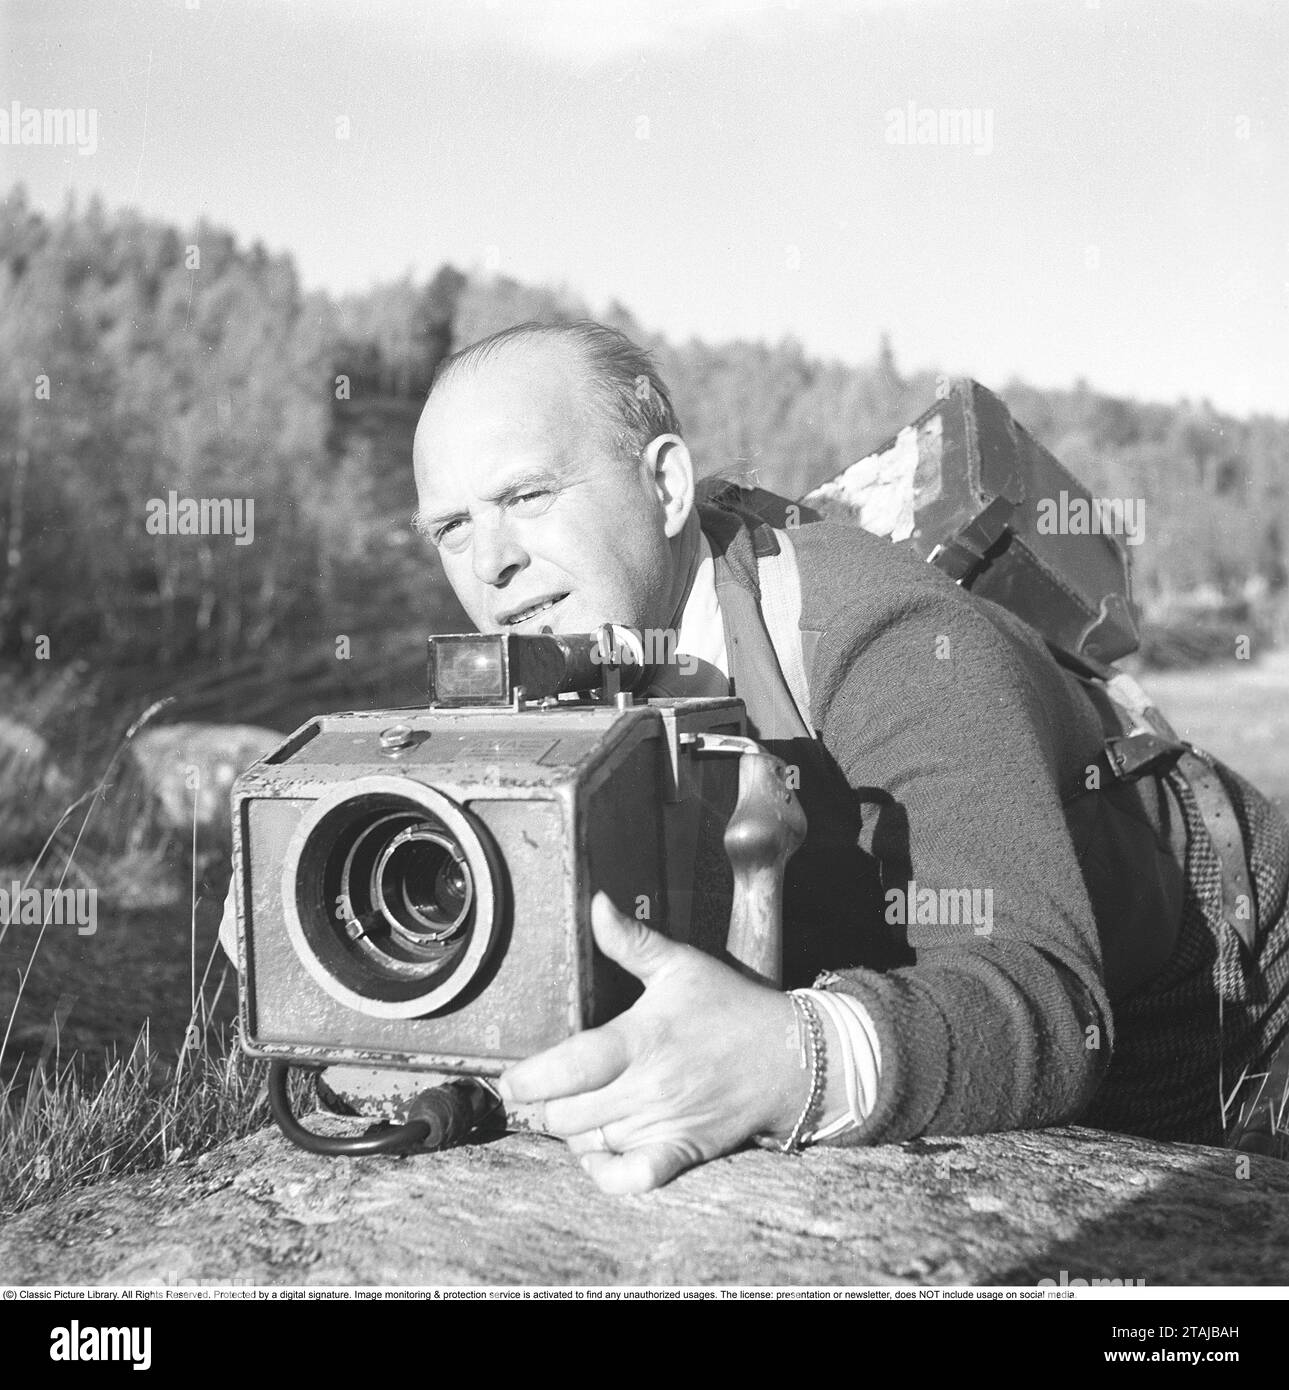 Kameramann in den 1940er Jahren Gustaf Boge, 1891–1975, schwedischer Kameramann. Vor allem bekannt für Dreharbeiten für die schwedische Filmindustrie und die Zeitschrift SF, die ein Kurzfilm war, in dem Nachrichten und Ereignisse in einer Art Dokumentarfilm dokumentiert wurden. Früher wurde es in Kinos gezeigt, meist vor einem Spielfilm. Hier ist Gustaf Boge auf einer Filmmission in Vålådalen zu sehen, wo er die Kamera im besten Scharfschützenstil hochhebt. 1942. Kristoffersson Ref. B63-3 Stockfoto